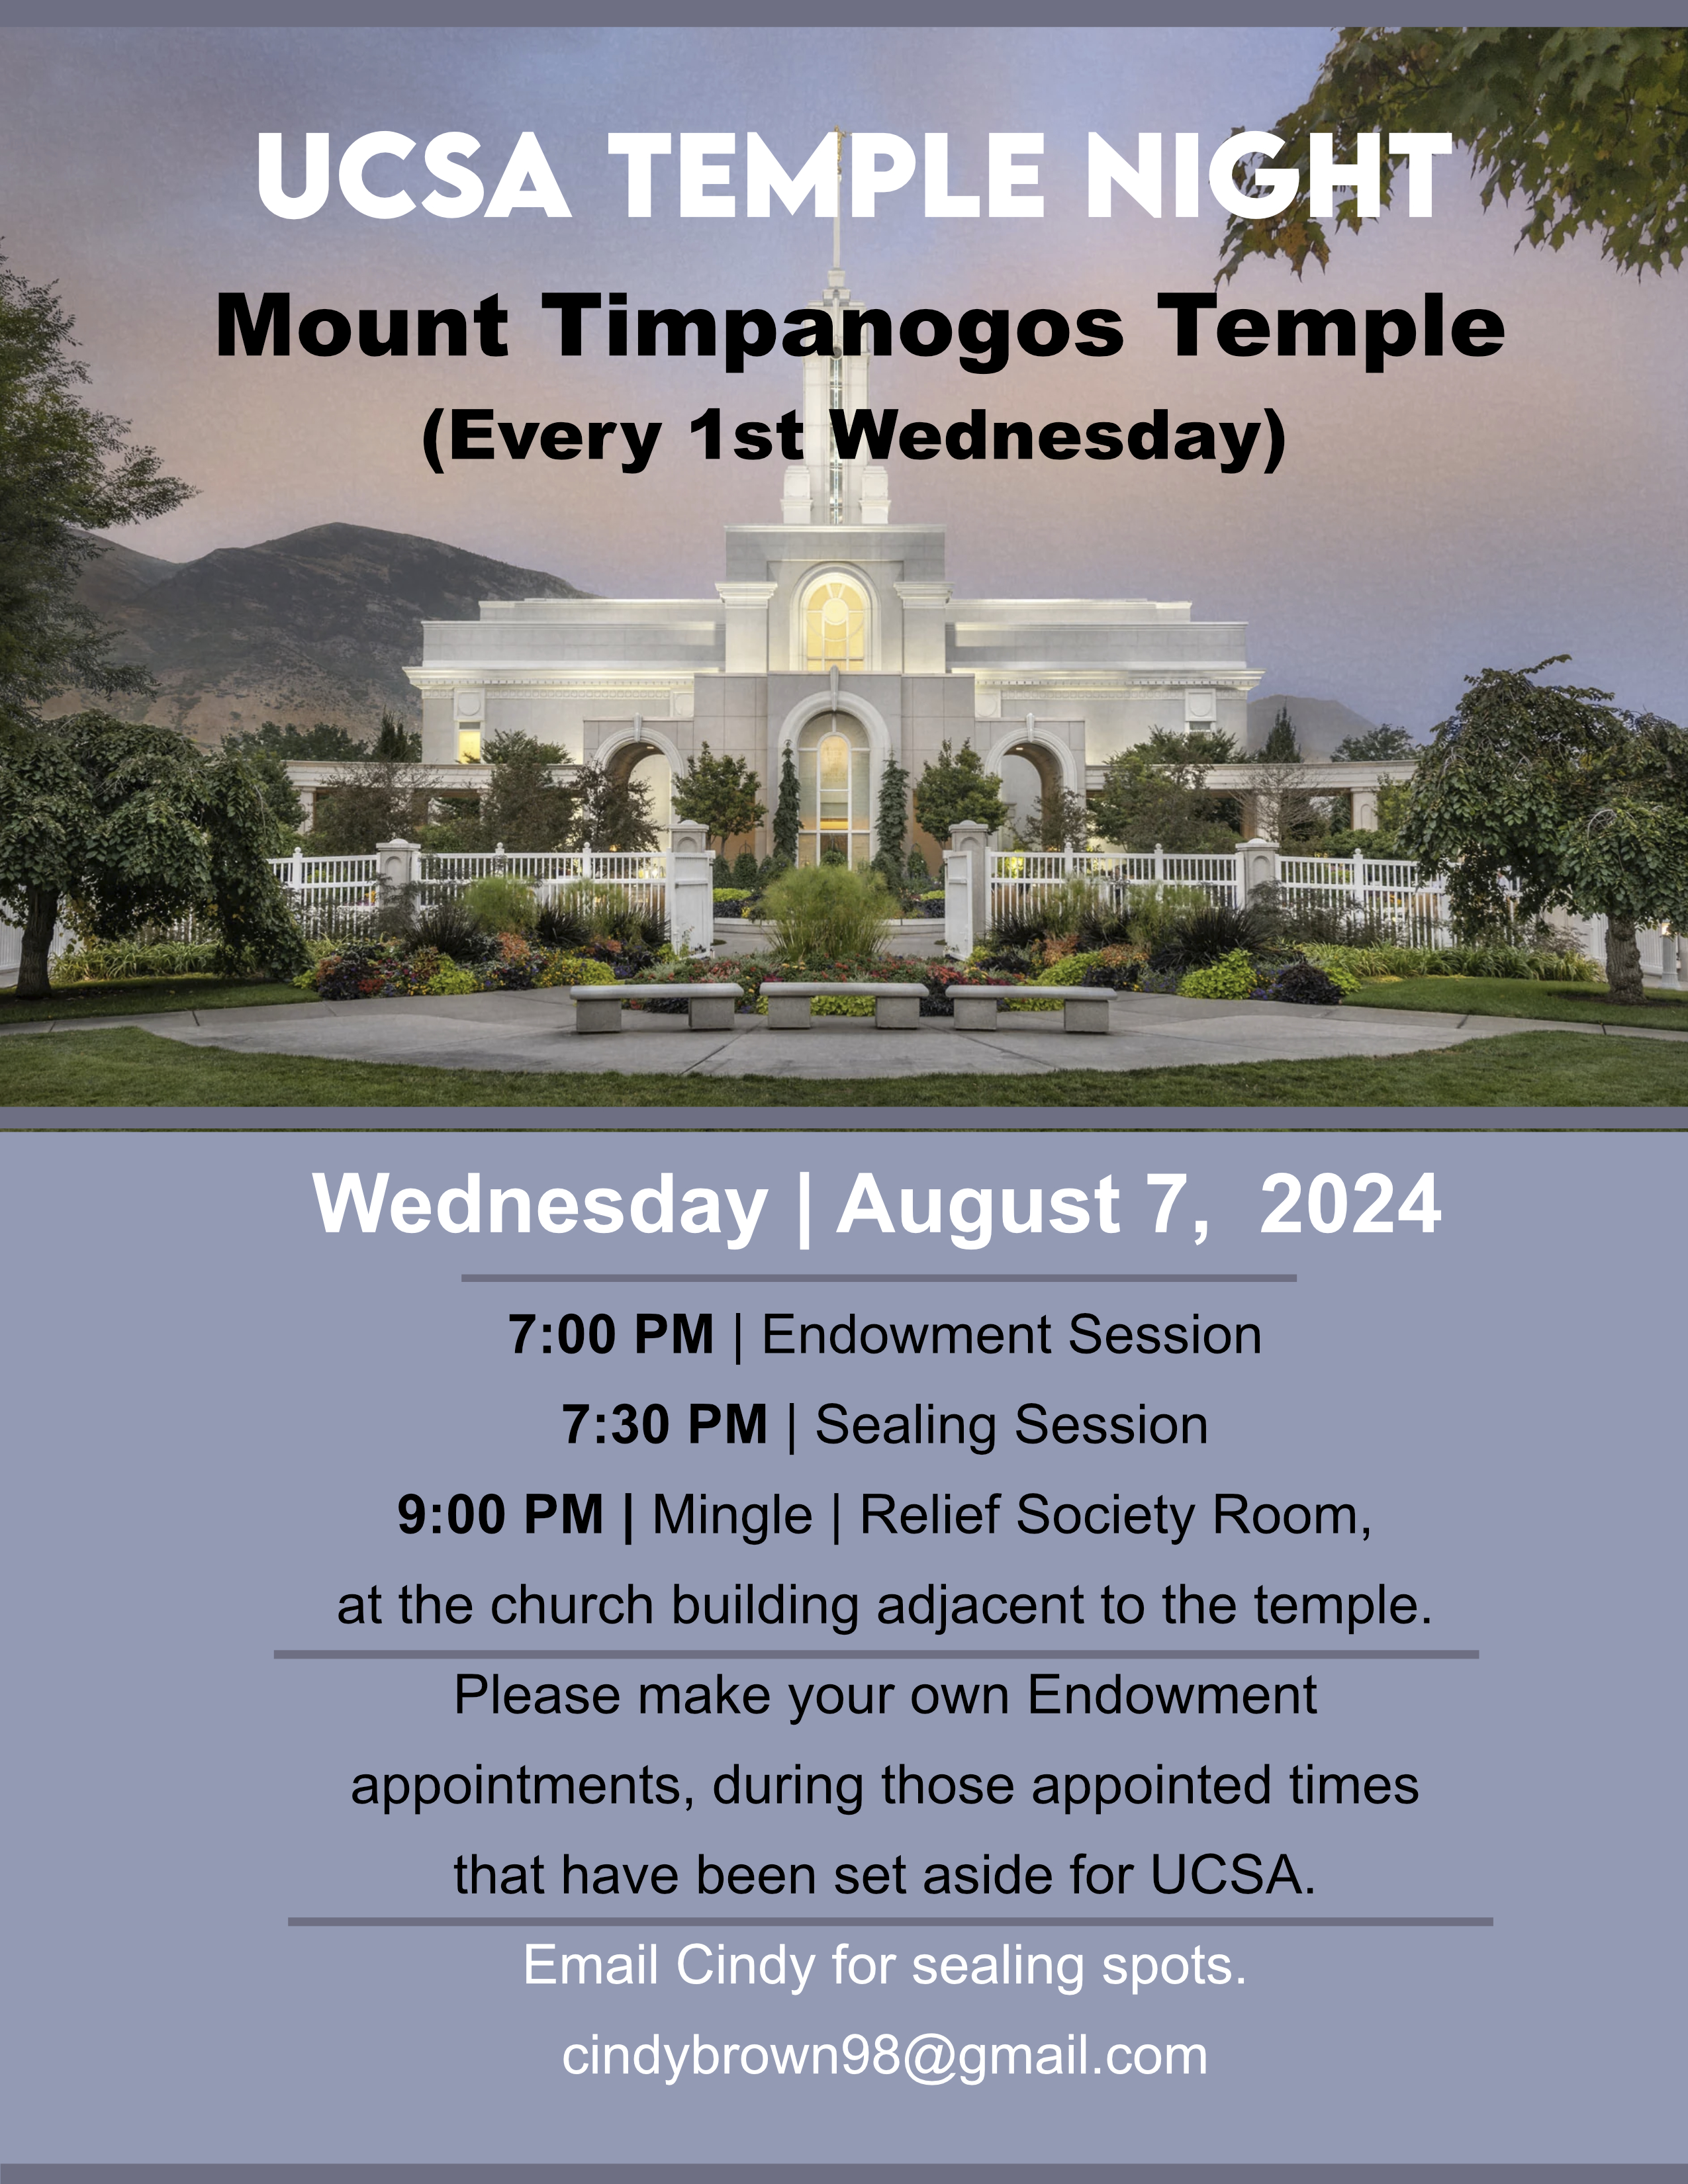 Mount Timpanogos Utah Temple Night